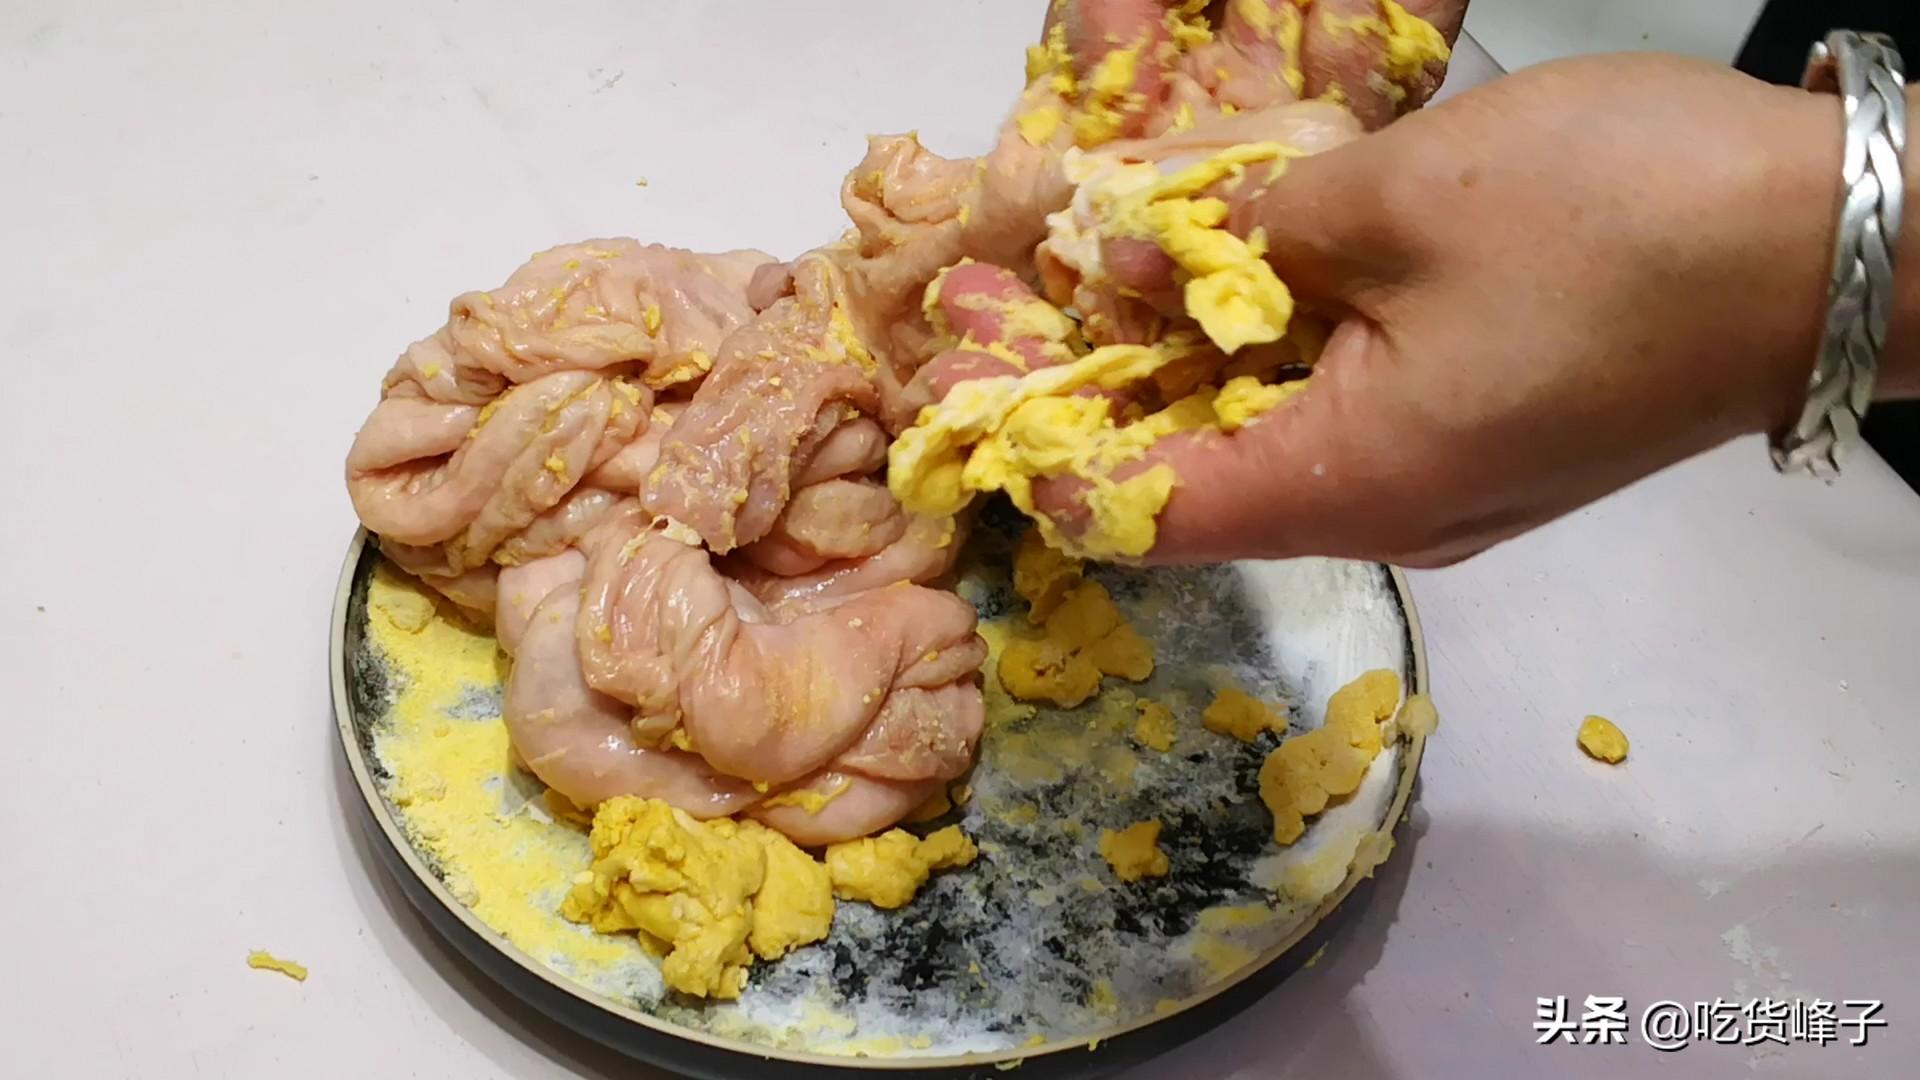 豬大腸怎麼清洗最幹凈 讓豬大腸幹凈又無異味的方法